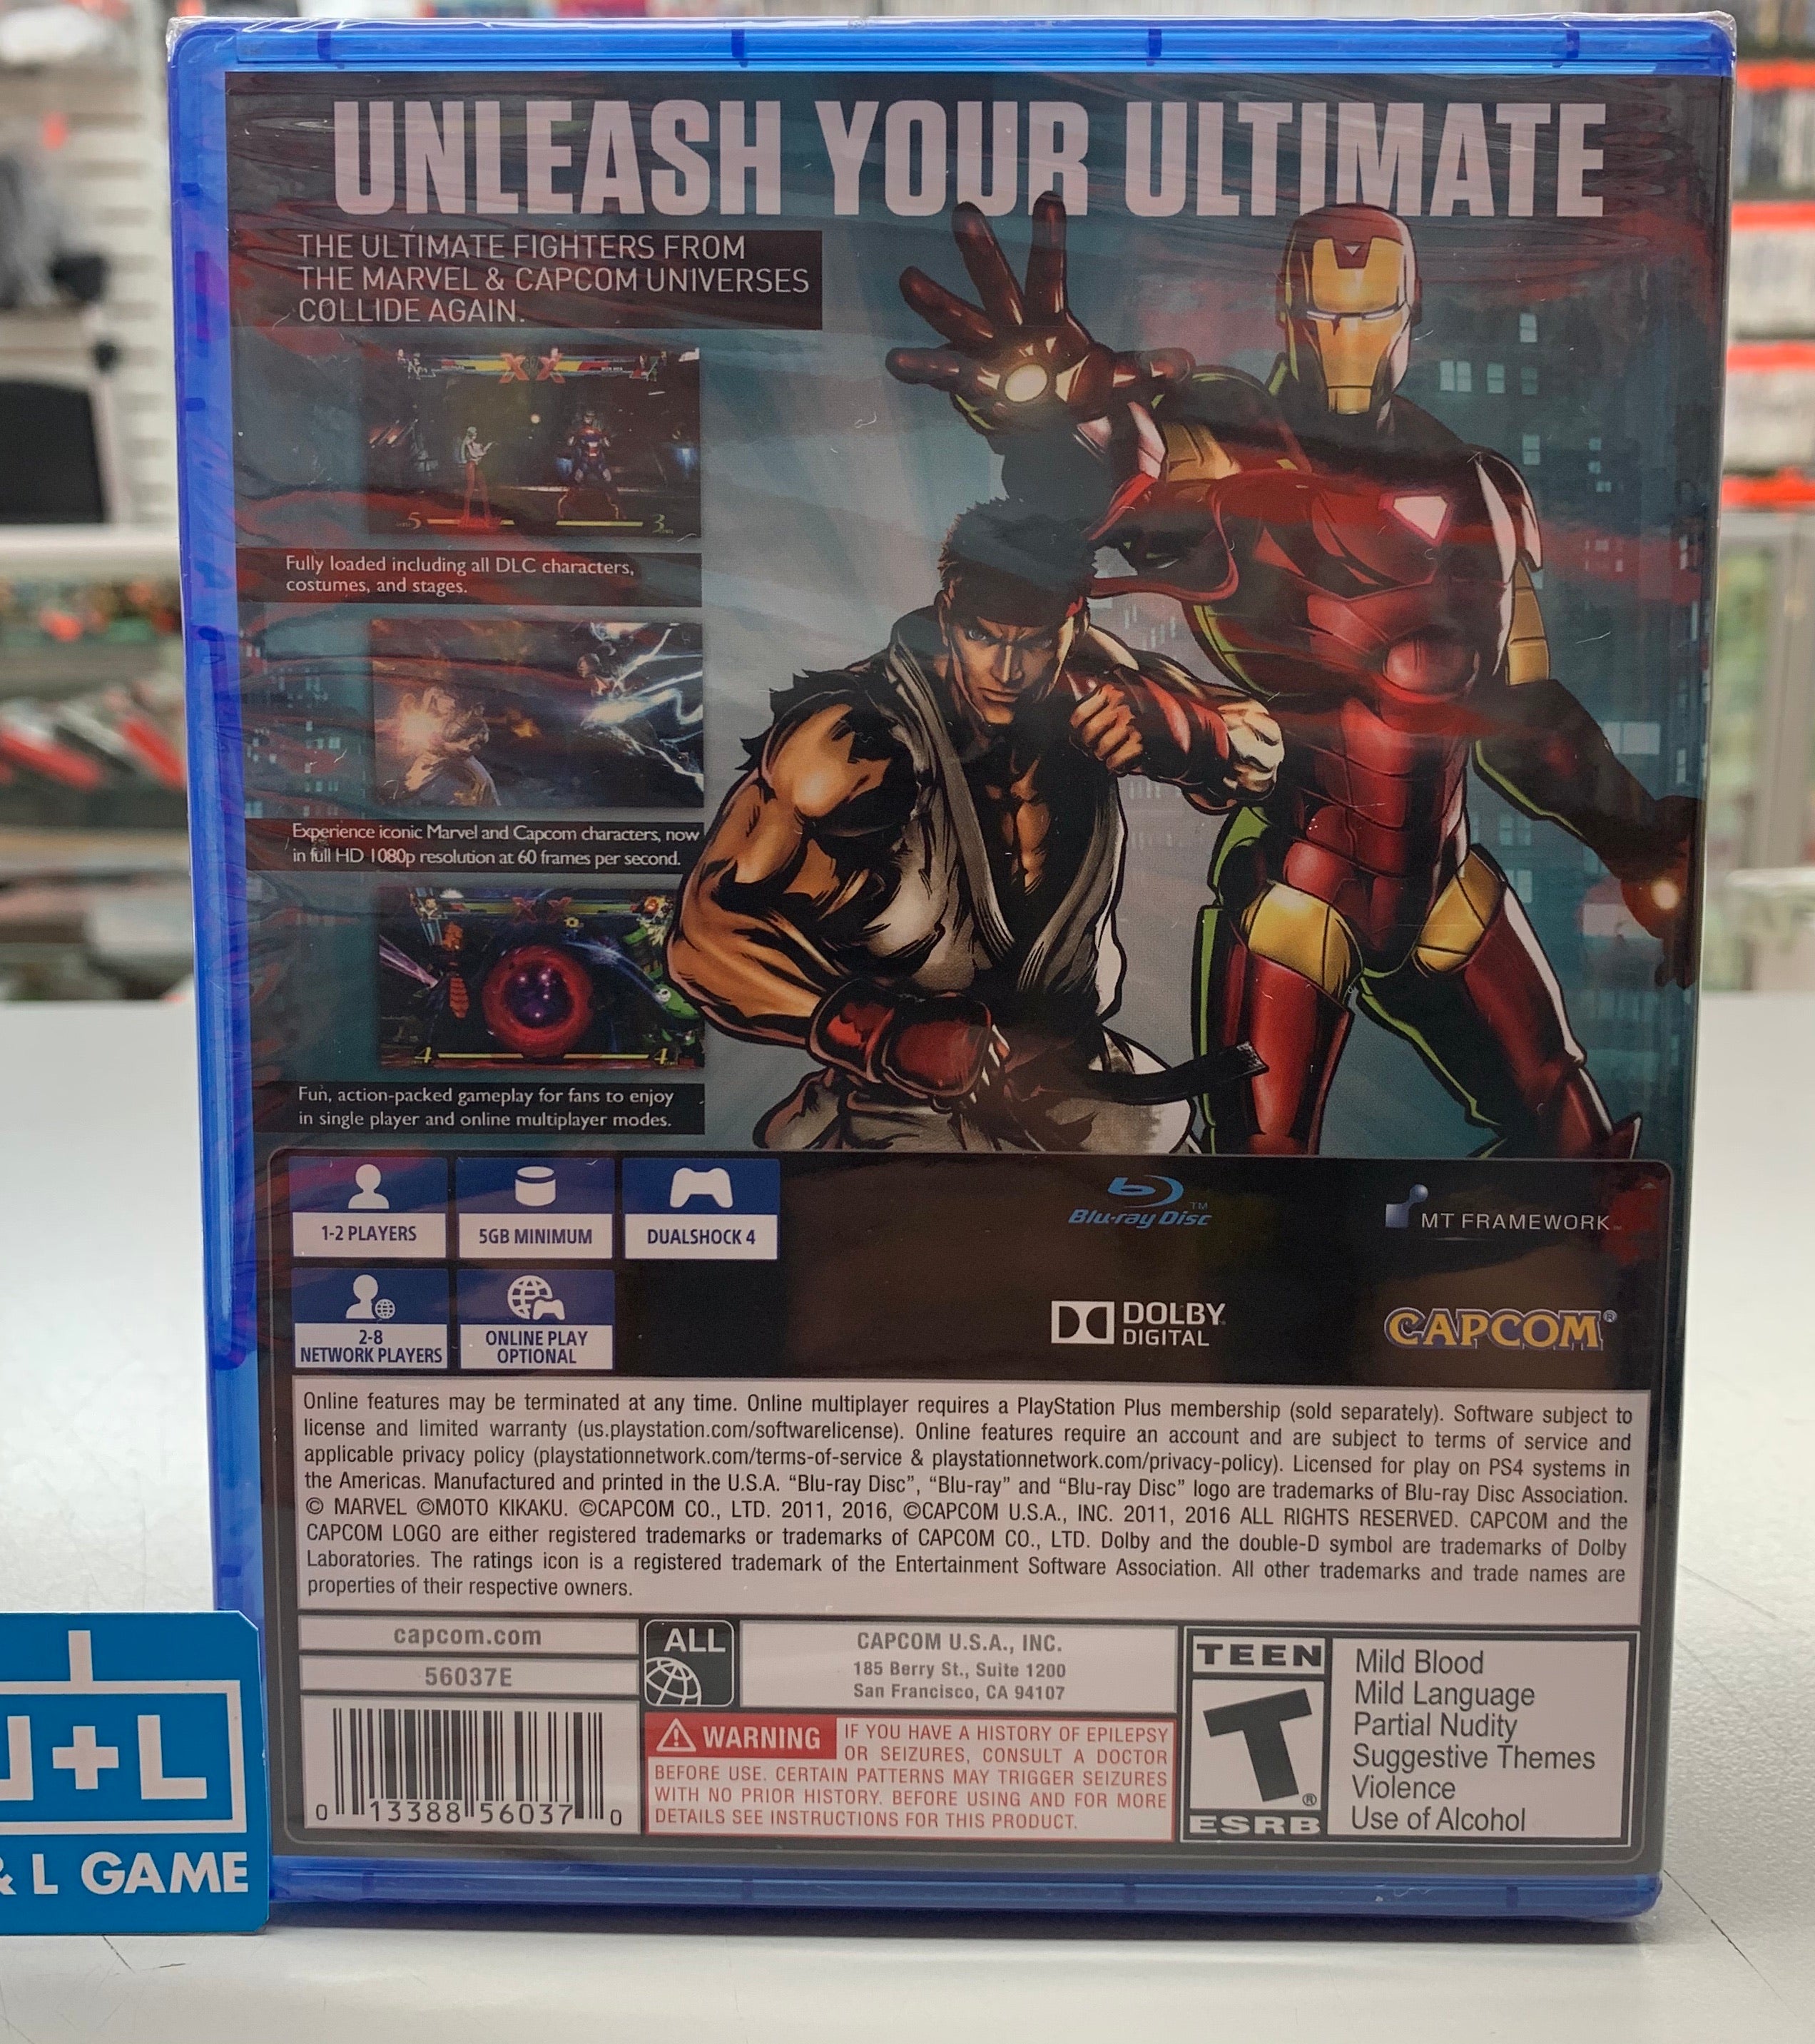 Ultimate Marvel Vs. Capcom 3 - (PS4) Playstation 4 Video Games Capcom   